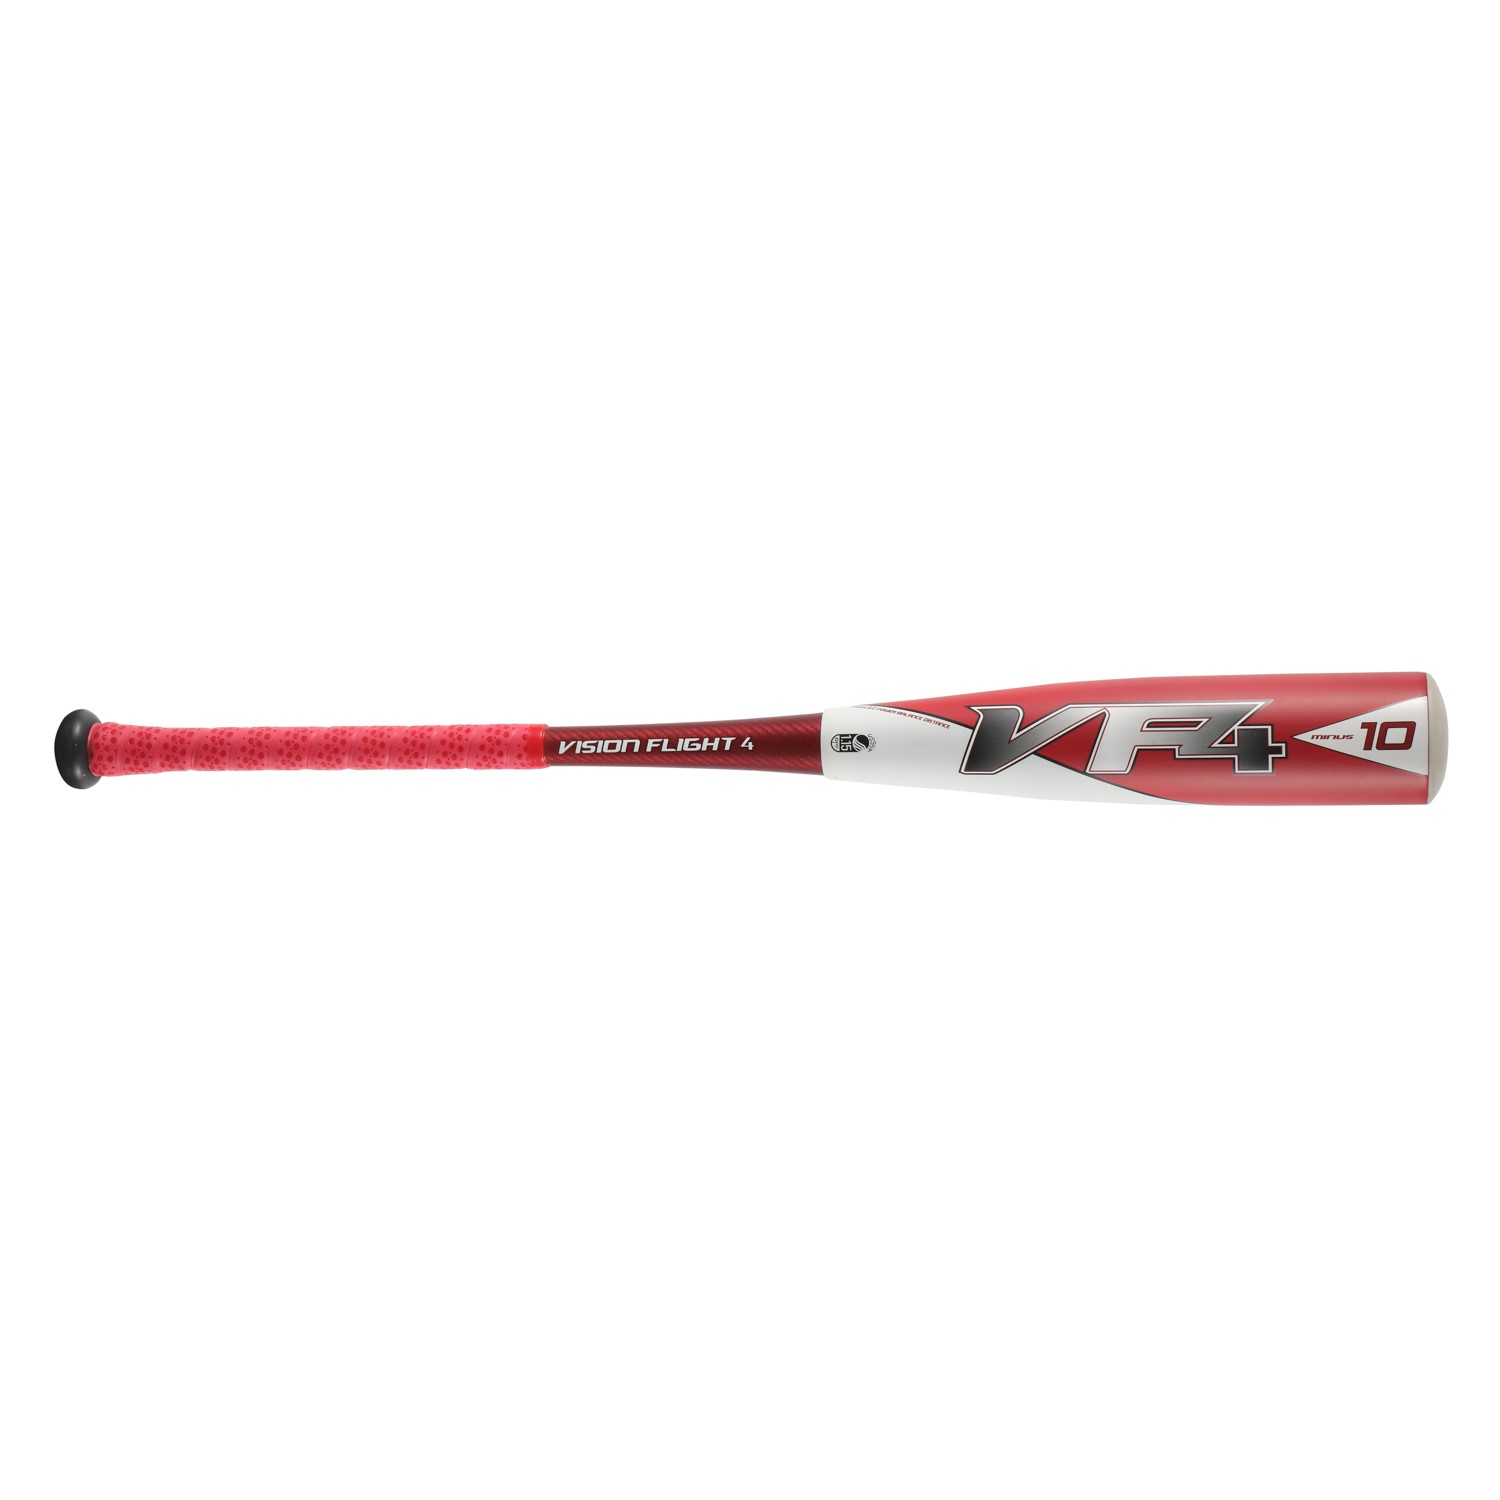 Hot Sale Senior -10 Big Barrel Baseball Bat